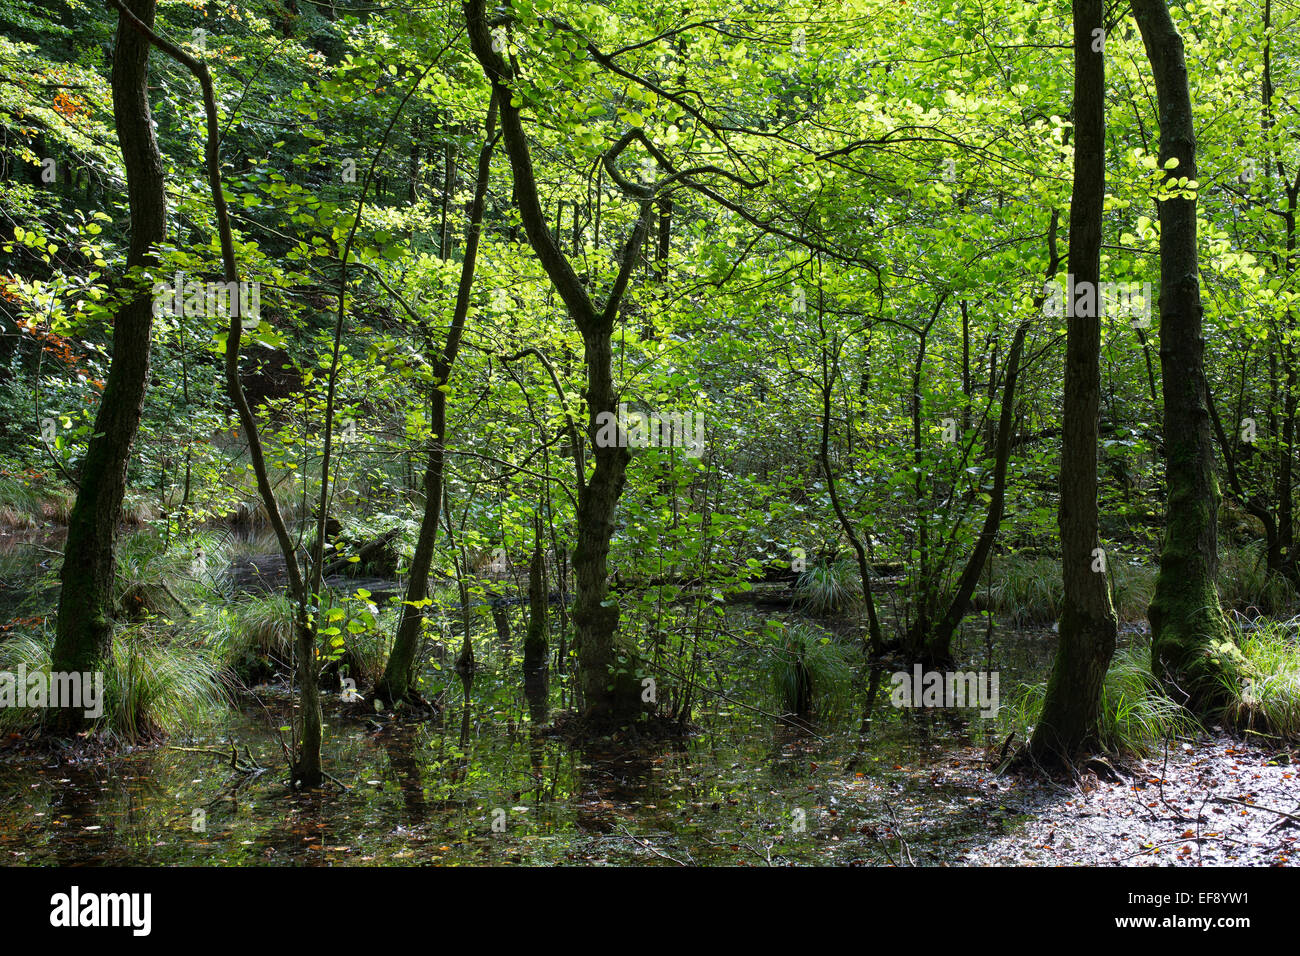 Riparian forest, Common Alder, Erlenbruch, Bruchwald, Schwarz-Erle, Schwarzerle, Erlen, Ufergehölz, Alnus glutinosa, Sumpf Stock Photo